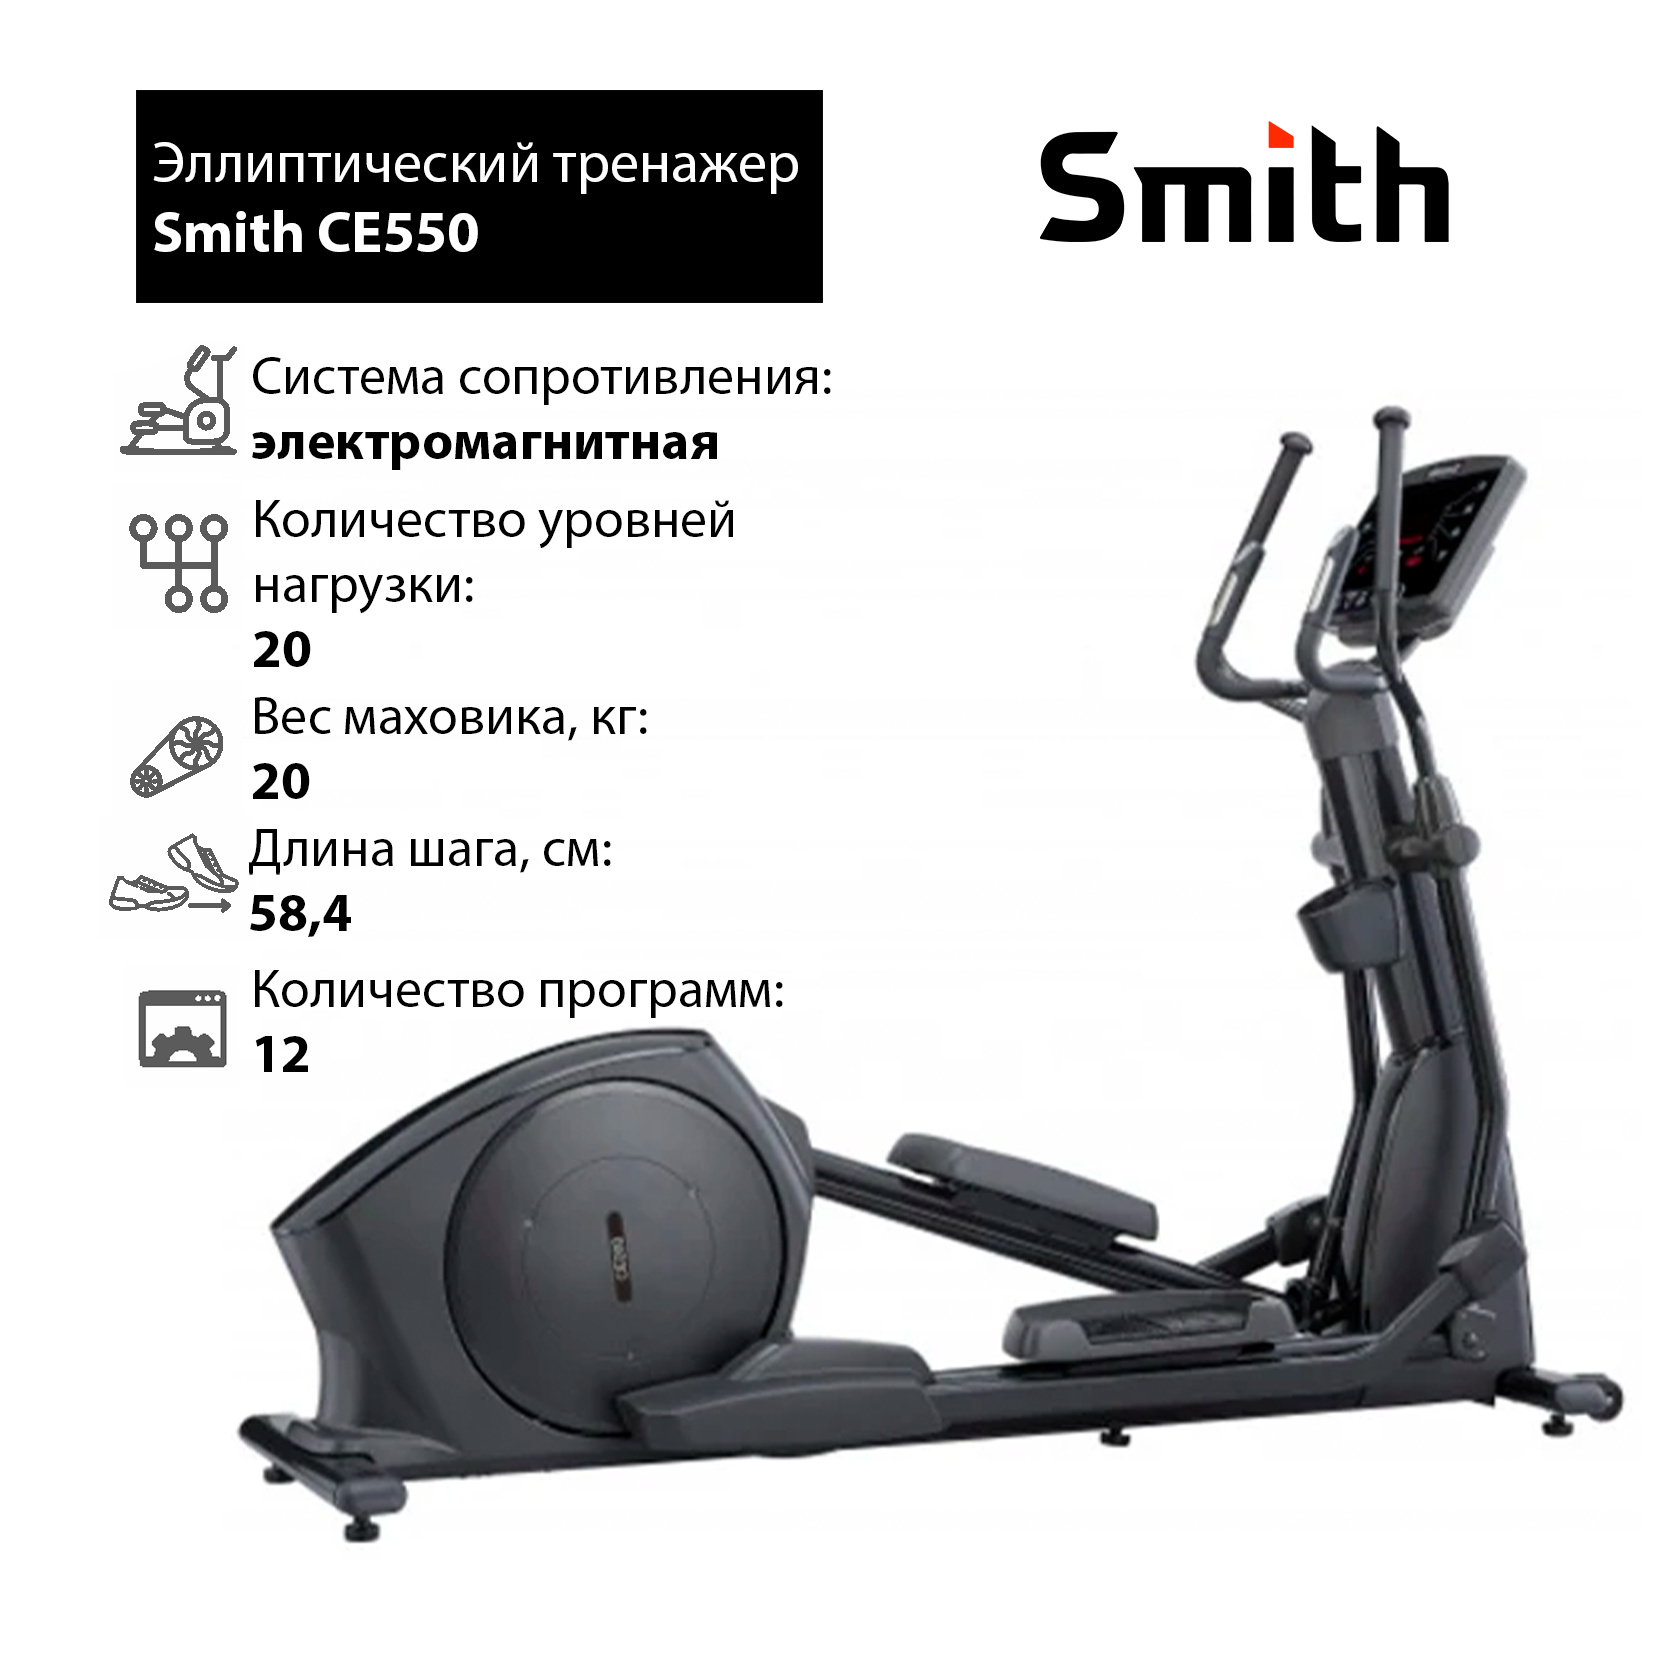 Smith CE550 iSmart - фото 1